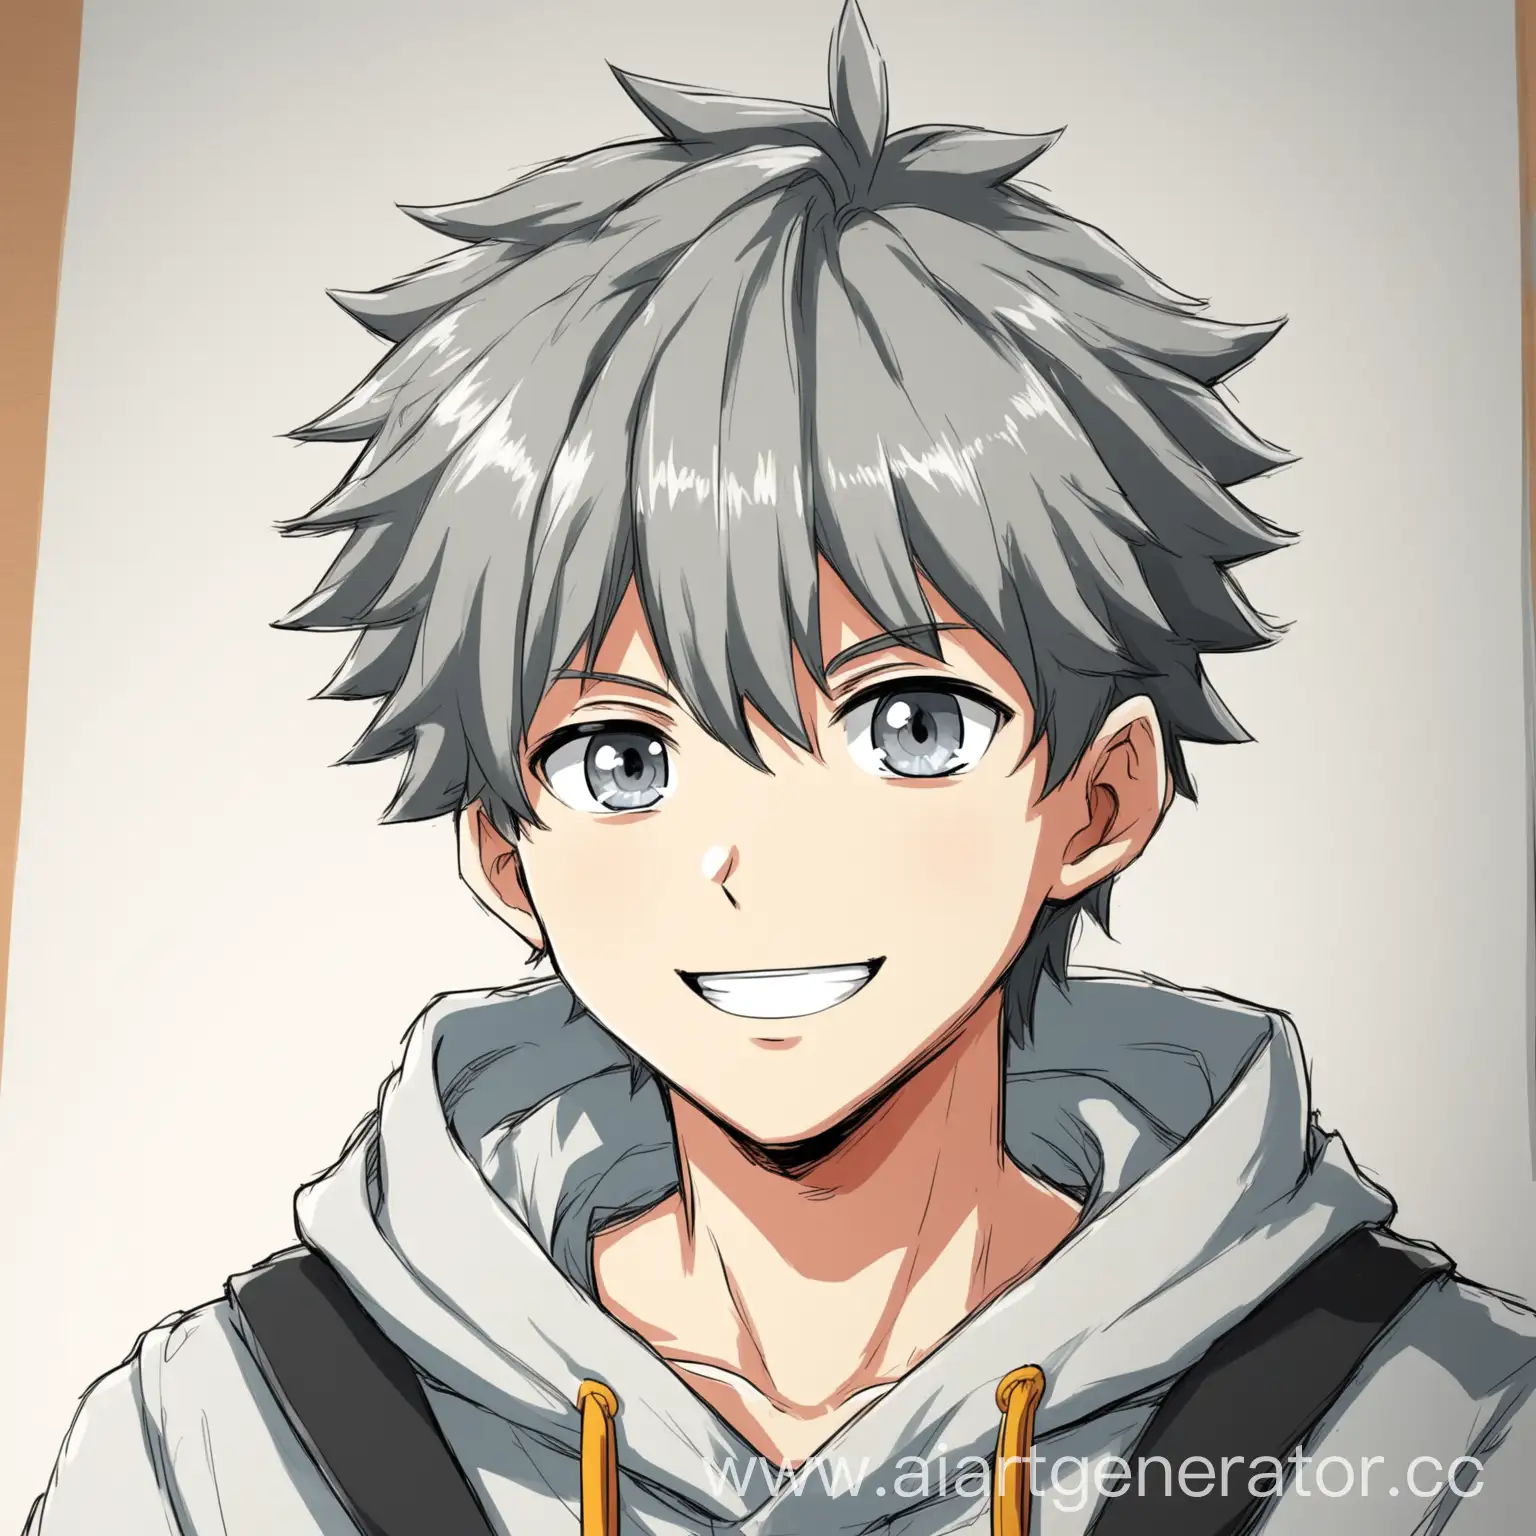 нарисуй жизнерадостного героя парня 16 ти лет в стиле аниме с серыми глазами